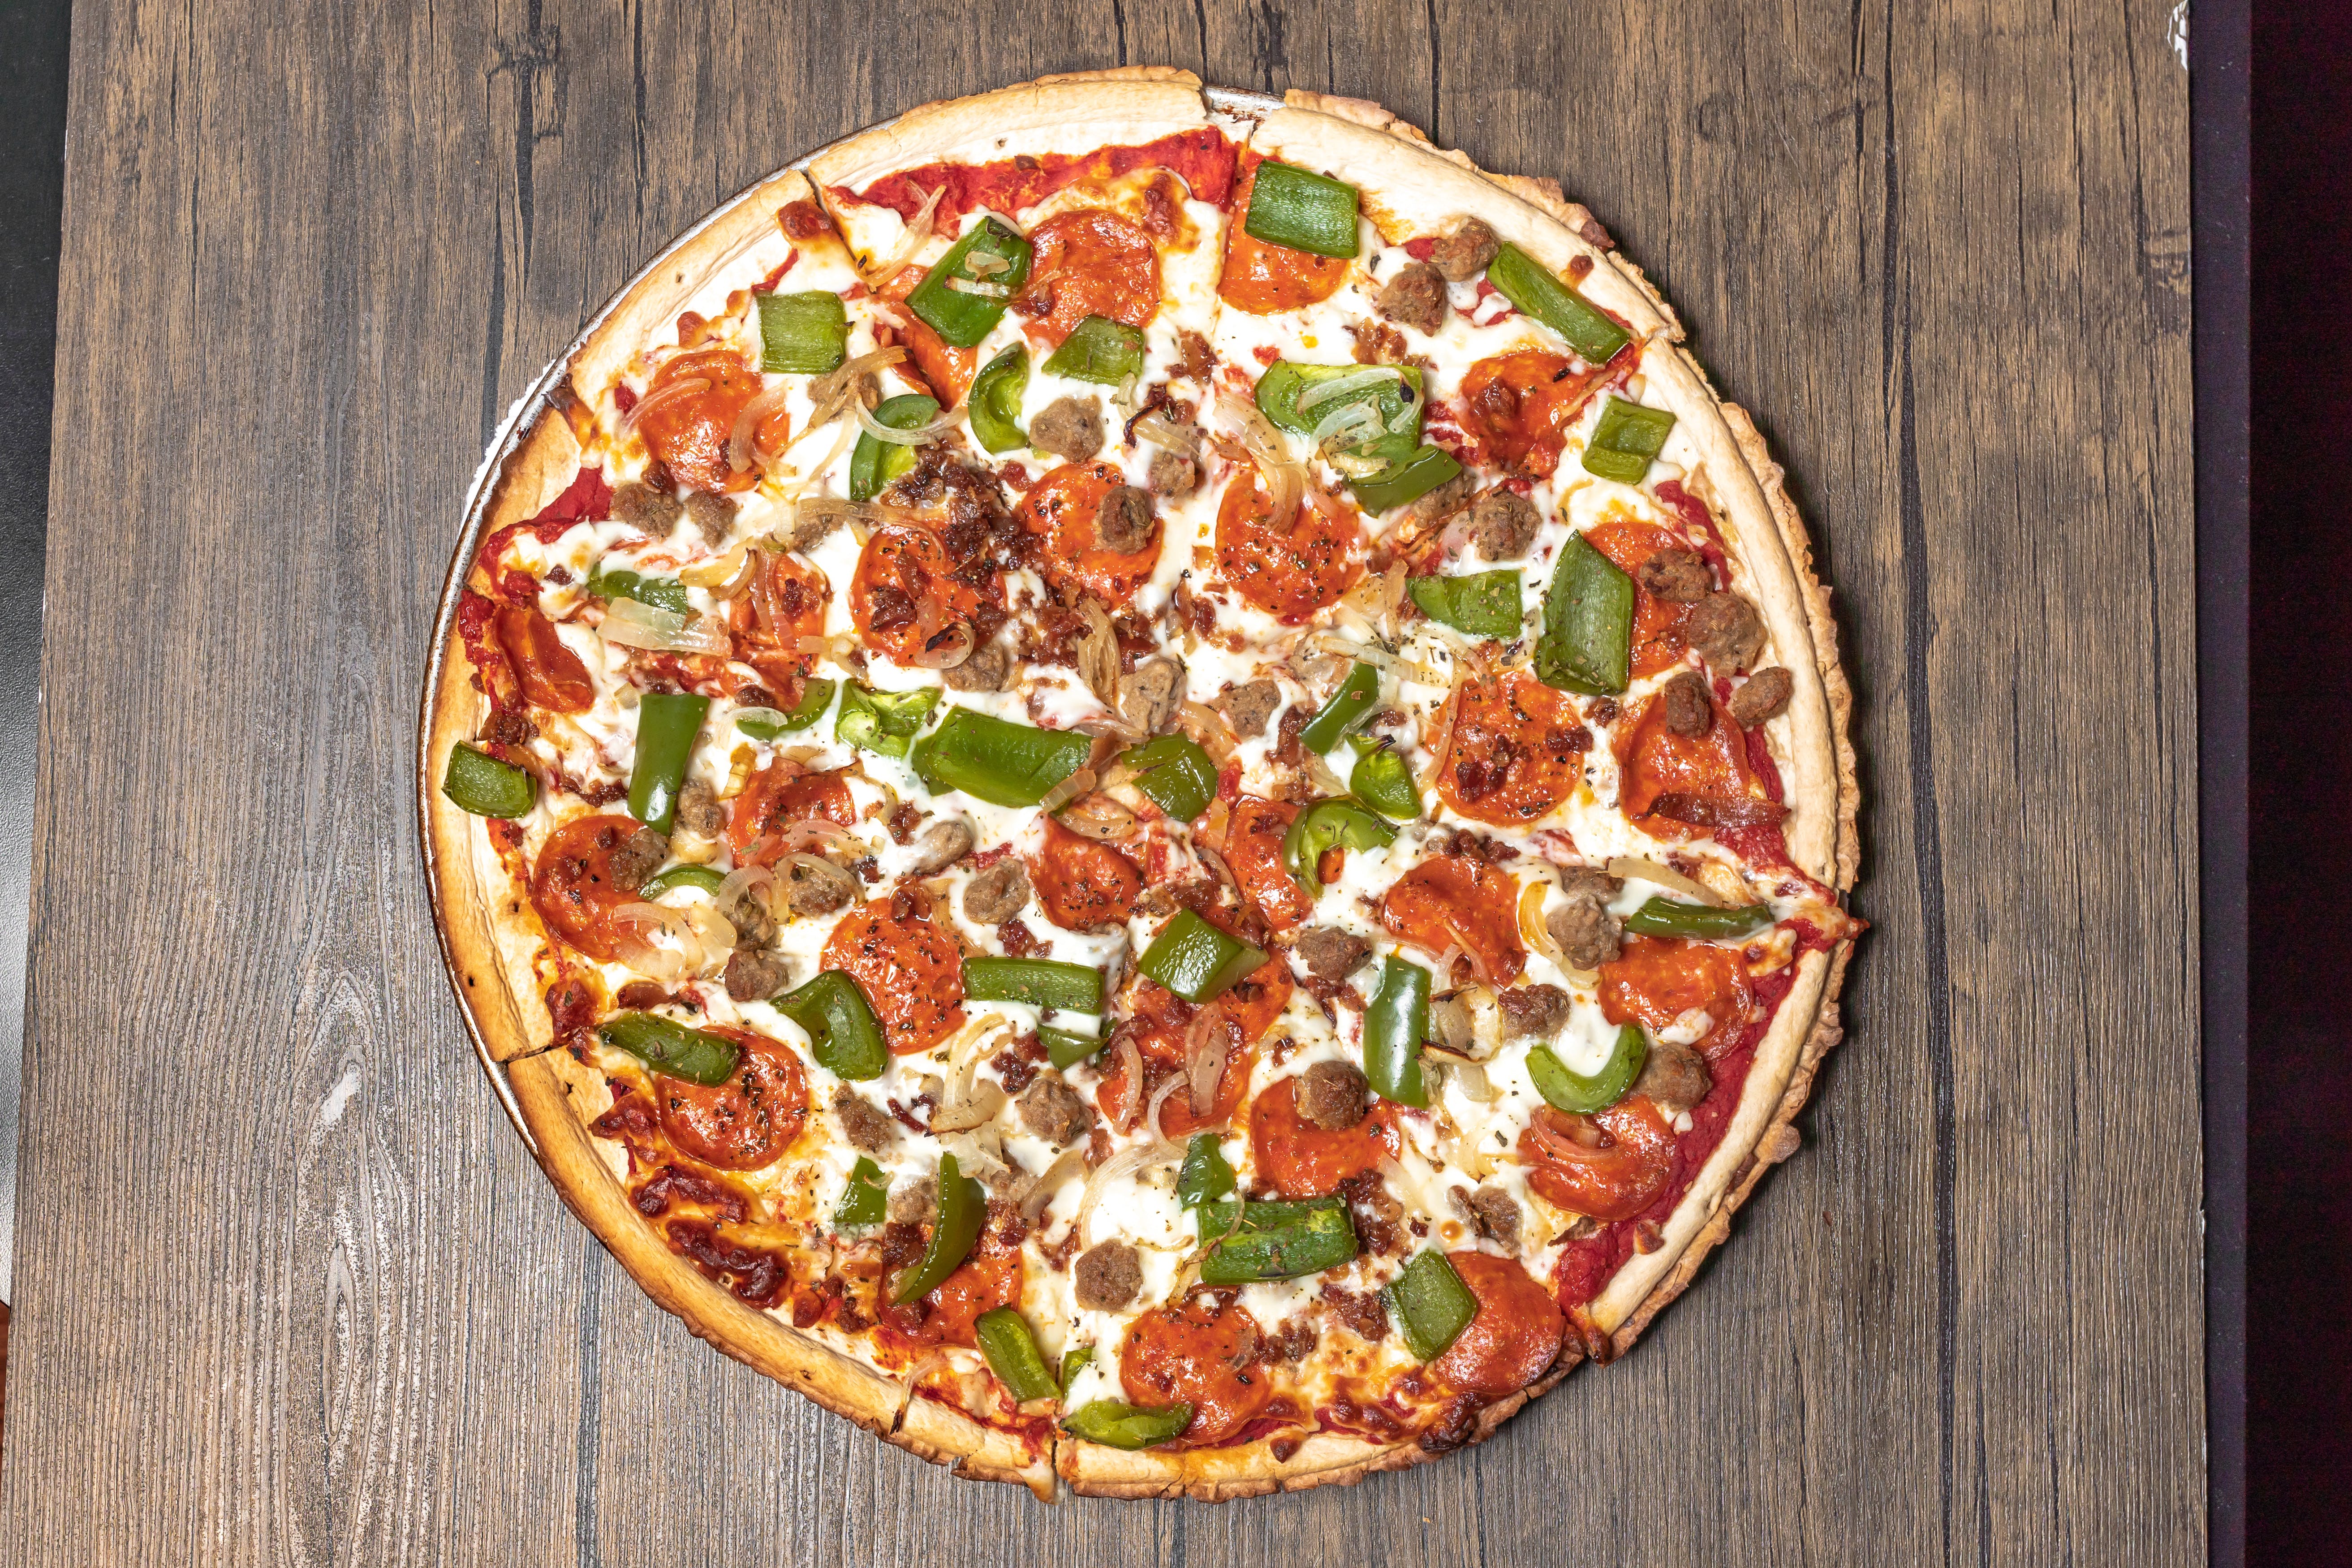 Crave Food Joynt & Pizza hero